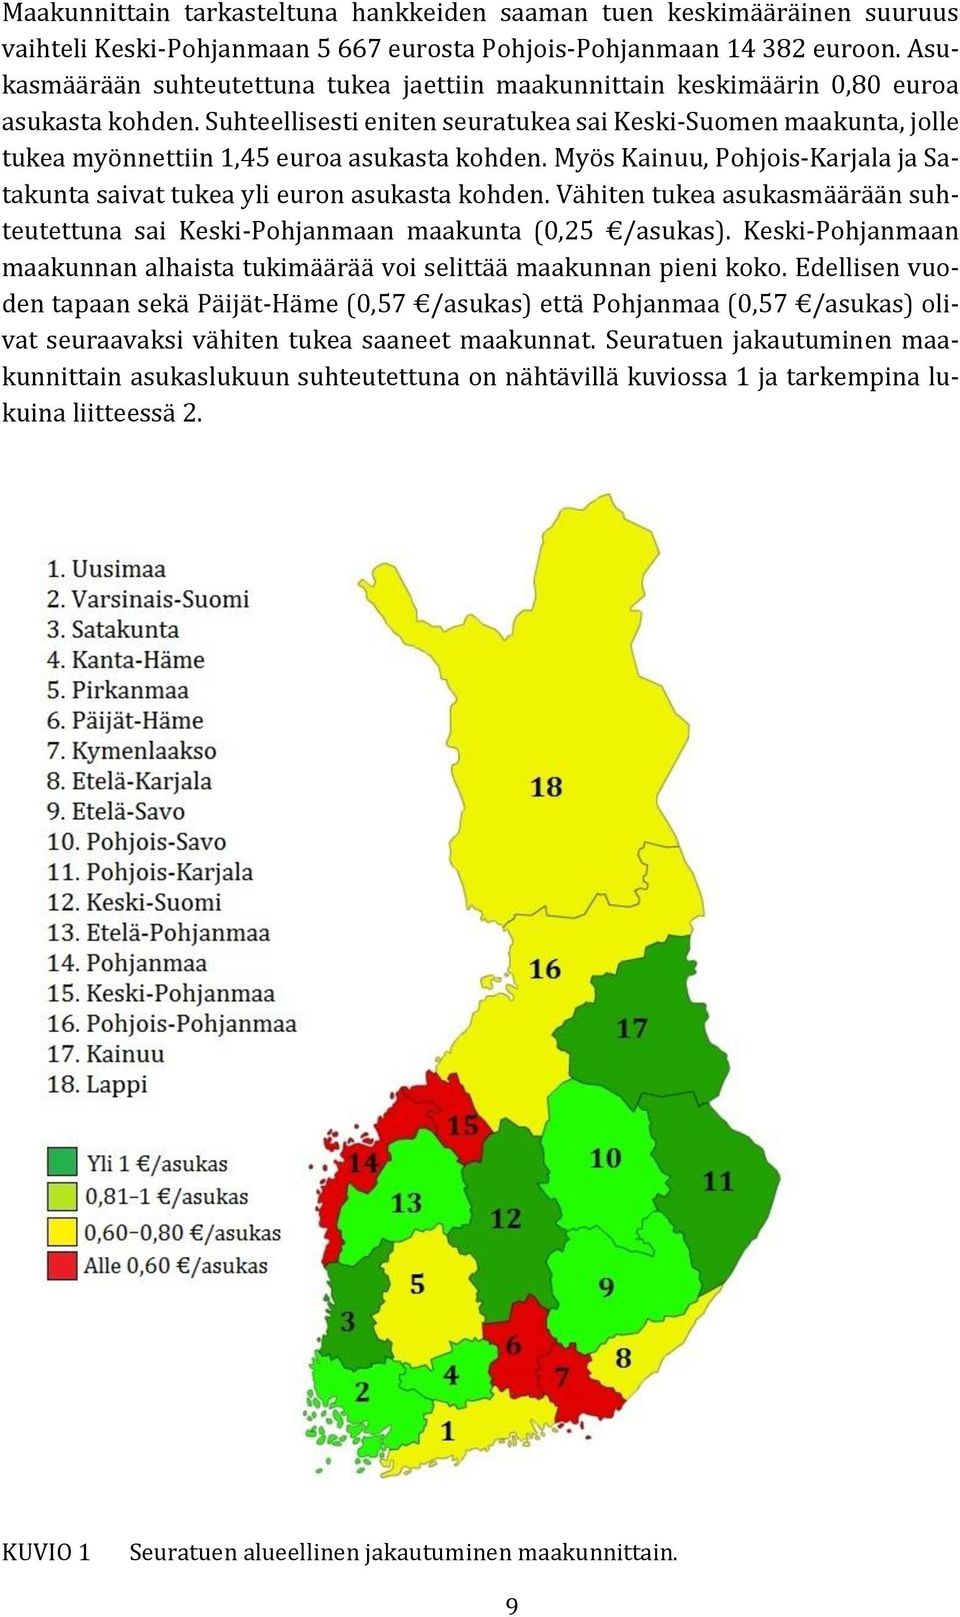 Suhteellisesti eniten seuratukea sai Keski-Suomen maakunta, jolle tukea myönnettiin 1,45 euroa asukasta kohden. Myös Kainuu, Pohjois-Karjala ja Satakunta saivat tukea yli euron asukasta kohden.